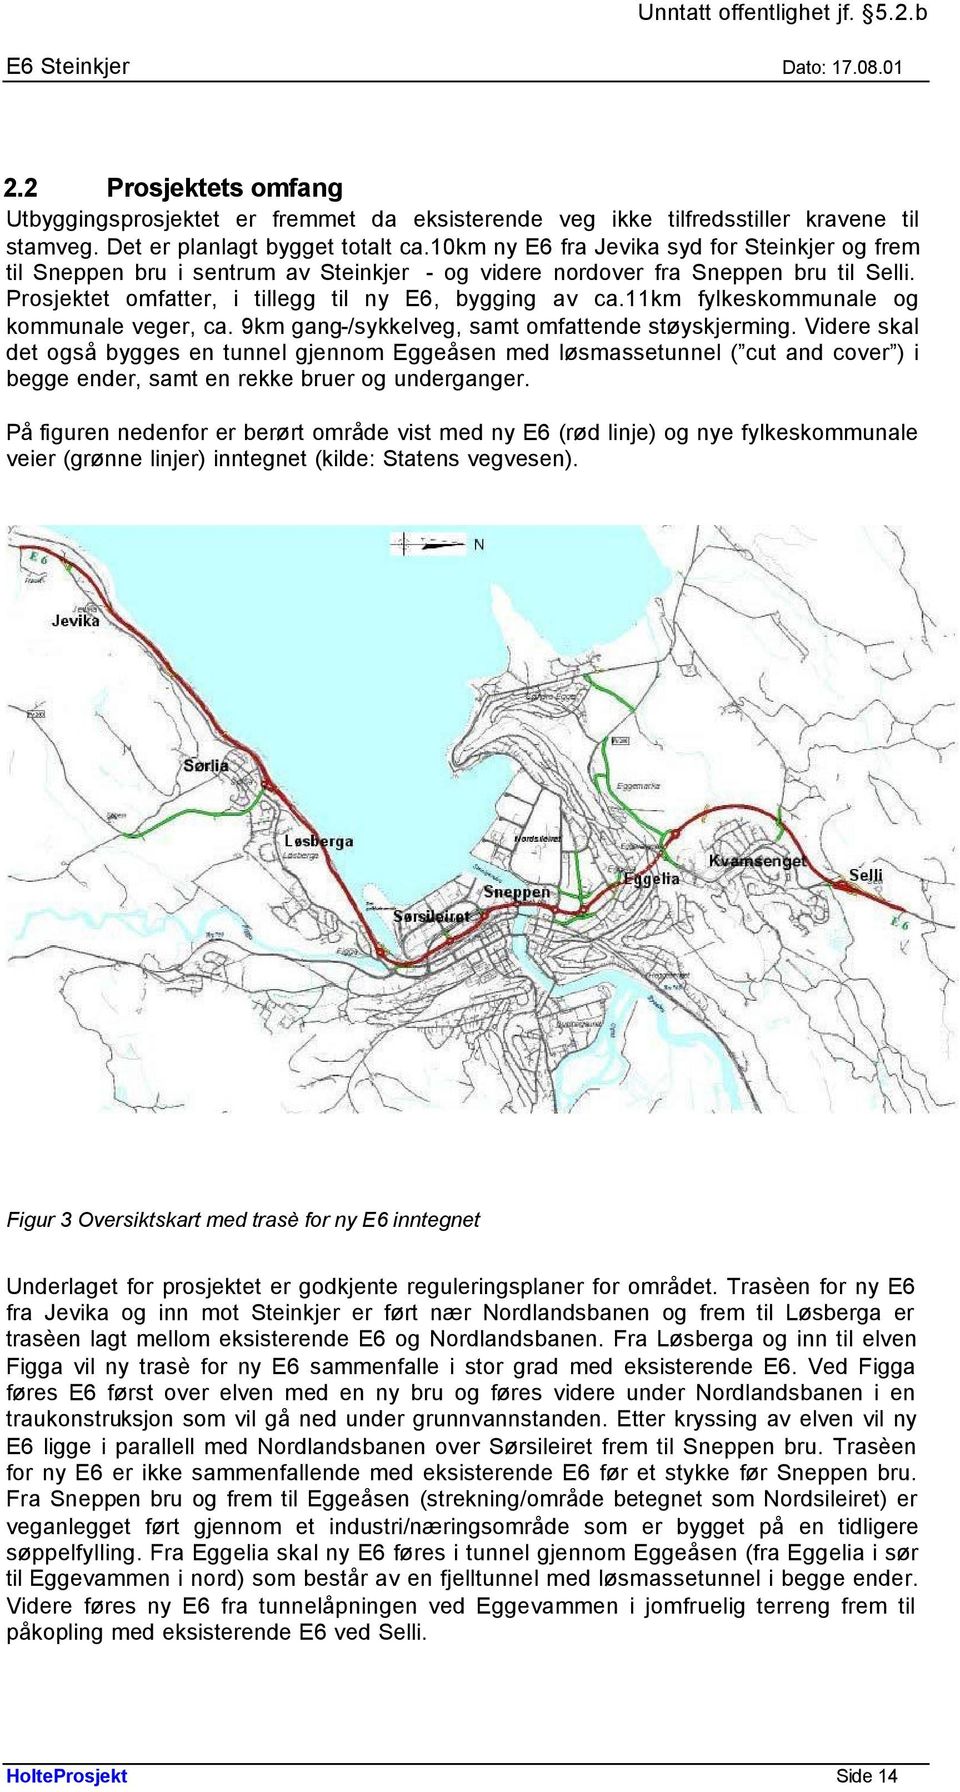 11km fylkeskommunale og kommunale veger, ca. 9km gang-/sykkelveg, samt omfattende støyskjerming.